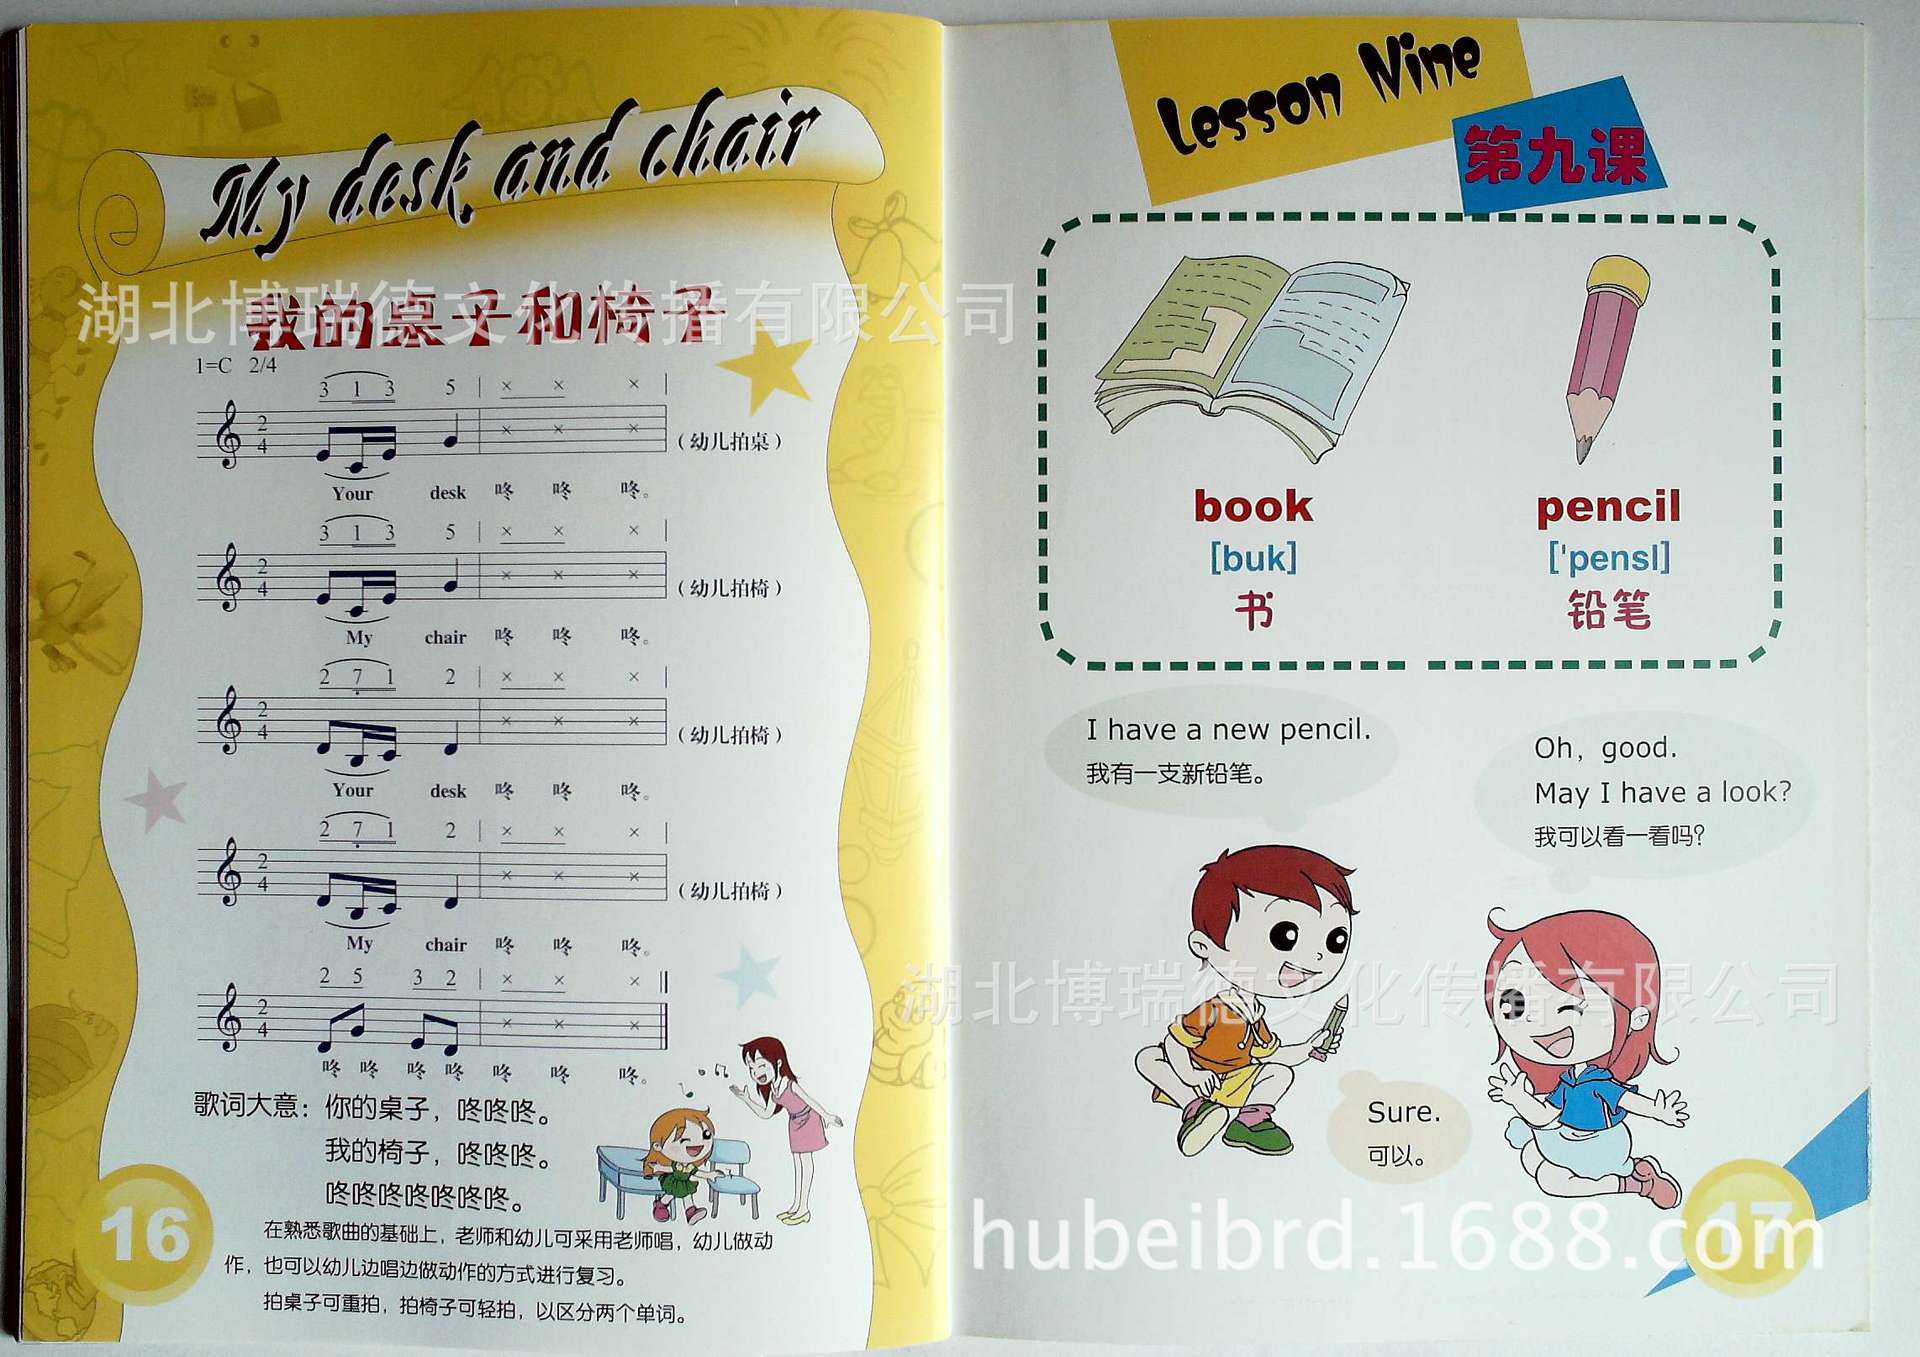 书籍-【幼儿园教材图书批发】幼儿园互动英语